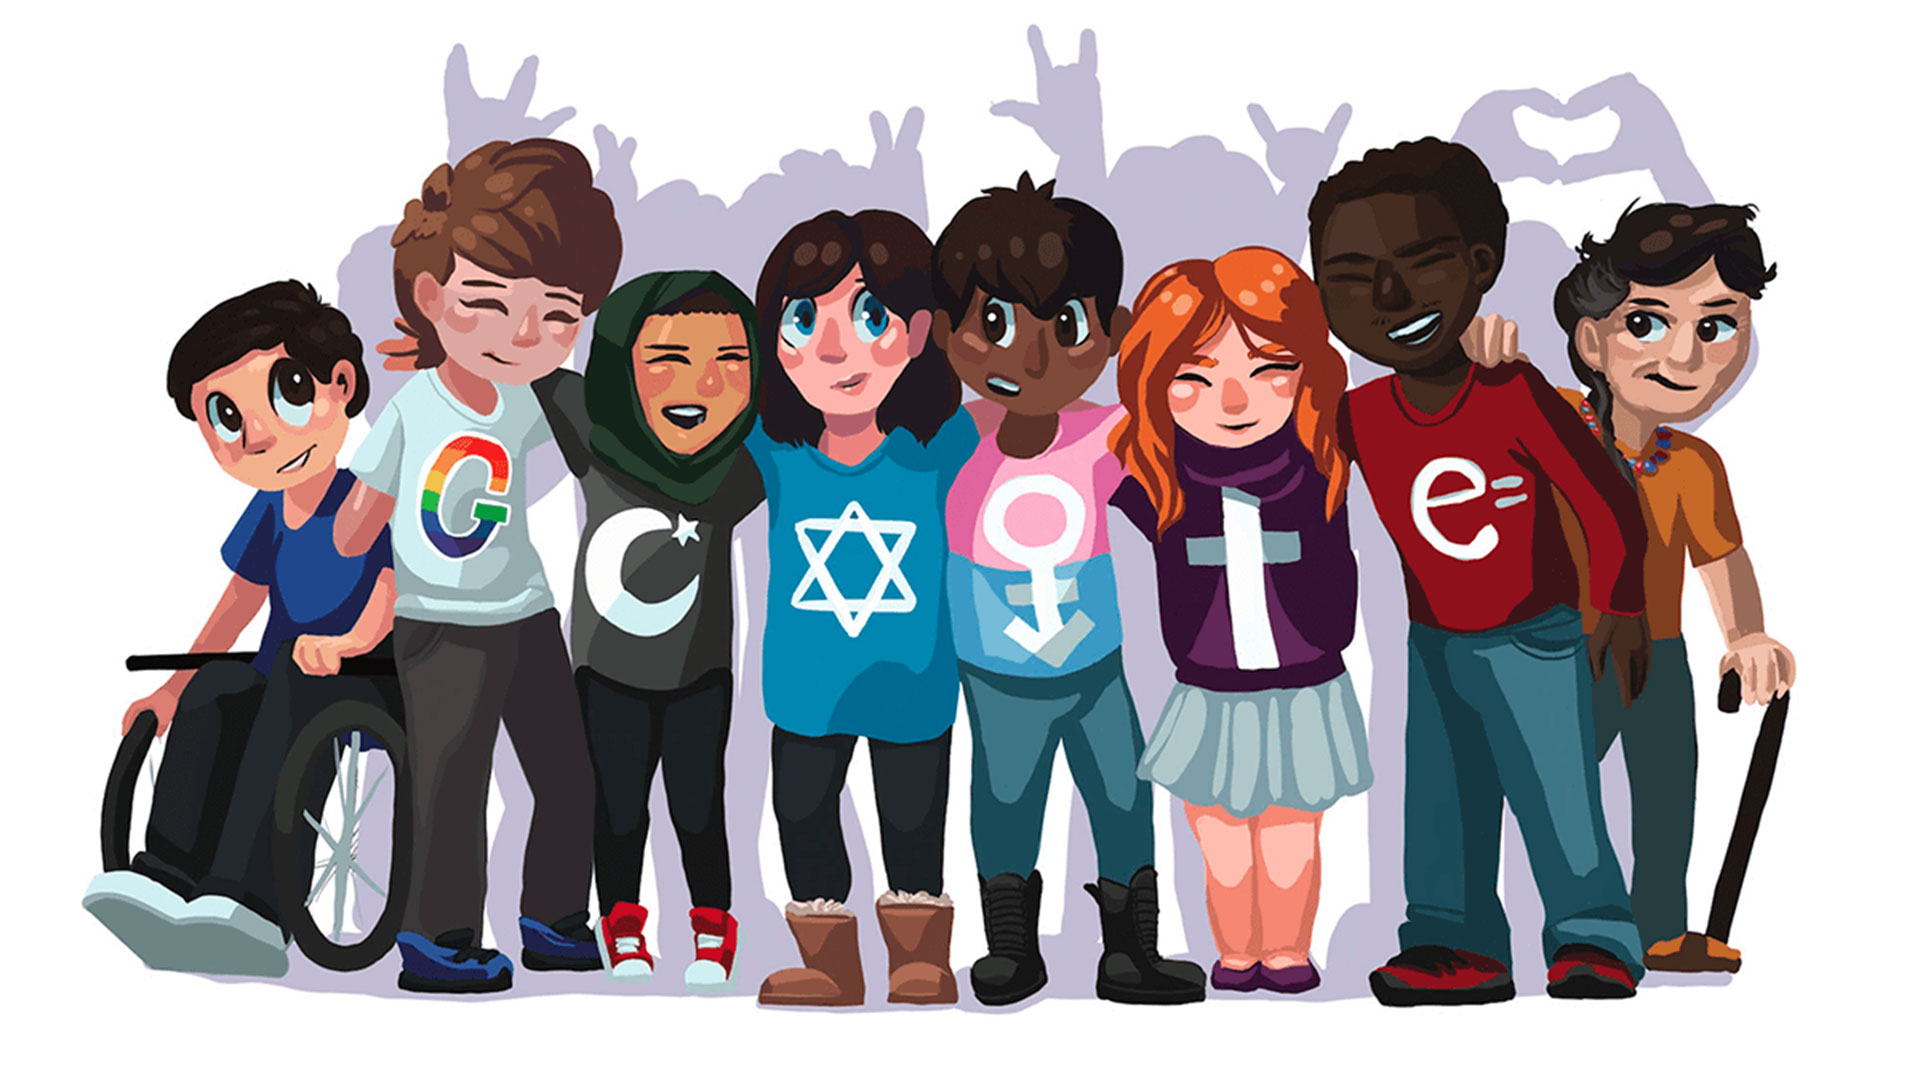 El futuro es la inclusión: una niña de 15 años lo dibuja en 'Doodle 4 Google'